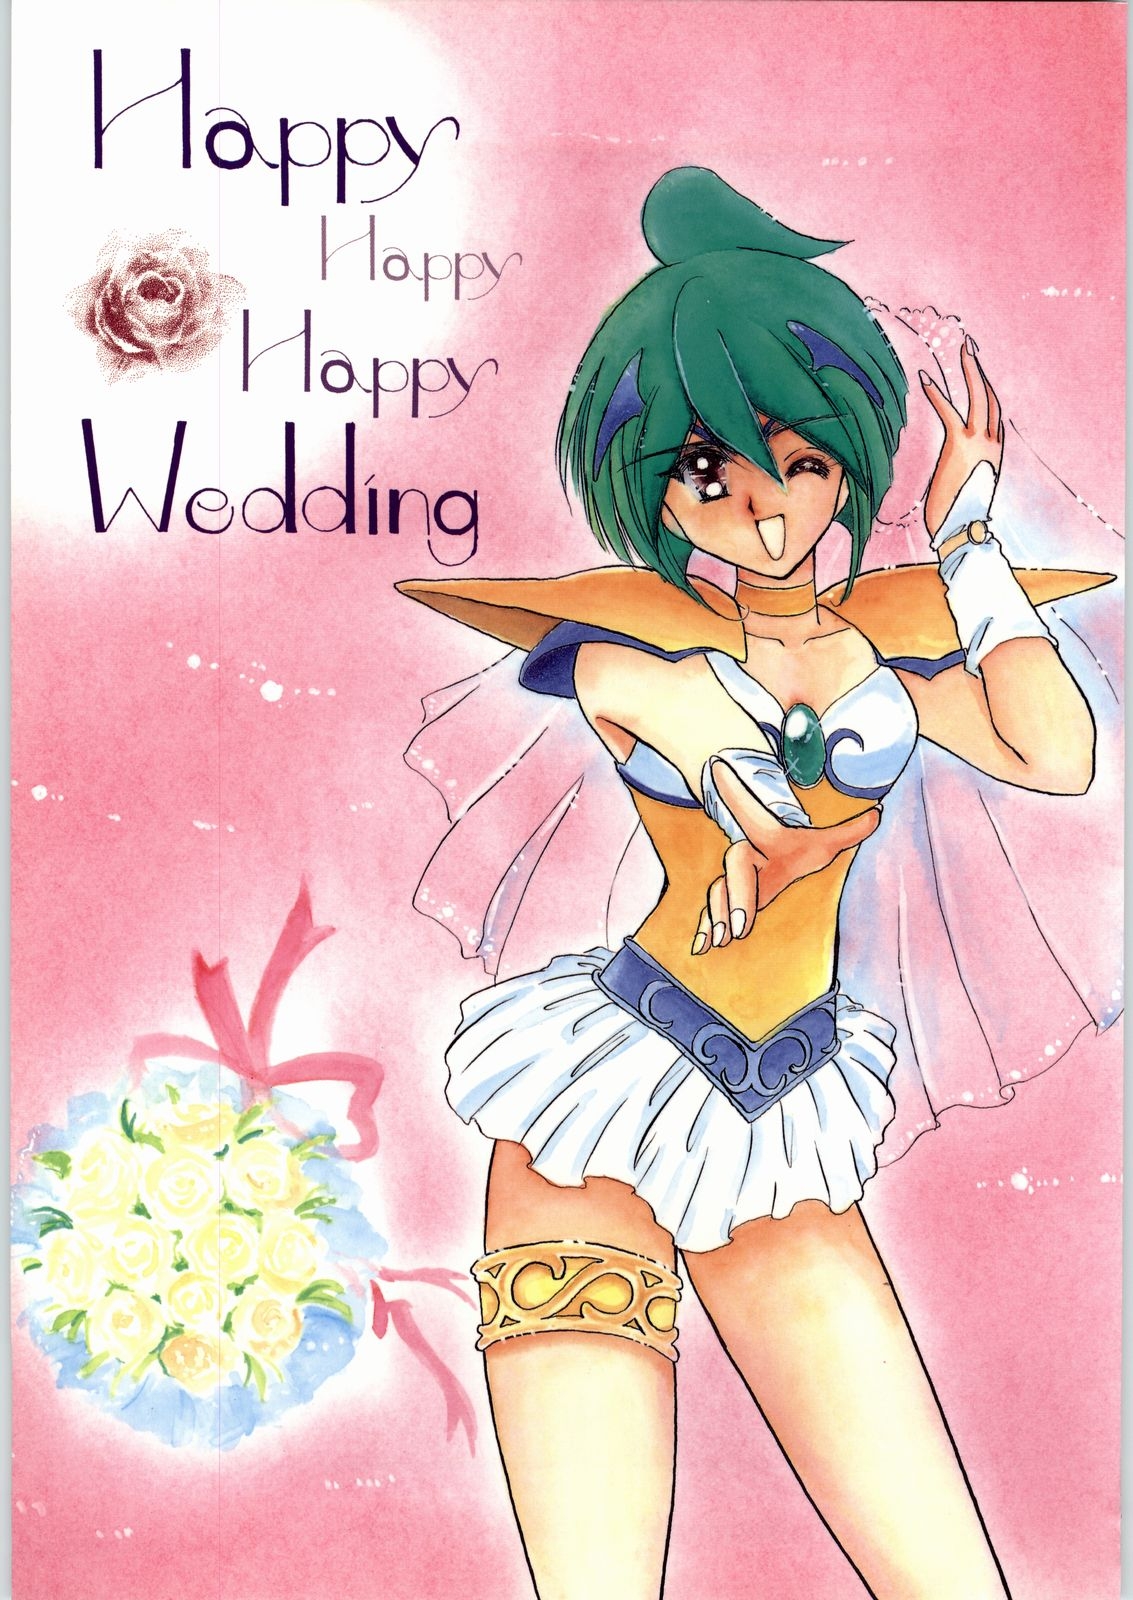 [Cafeteria Watermelon] HAPPY HAPPY HAPPY WEDDING (Ai Tenshi Densetsu Wedding Peach) 0